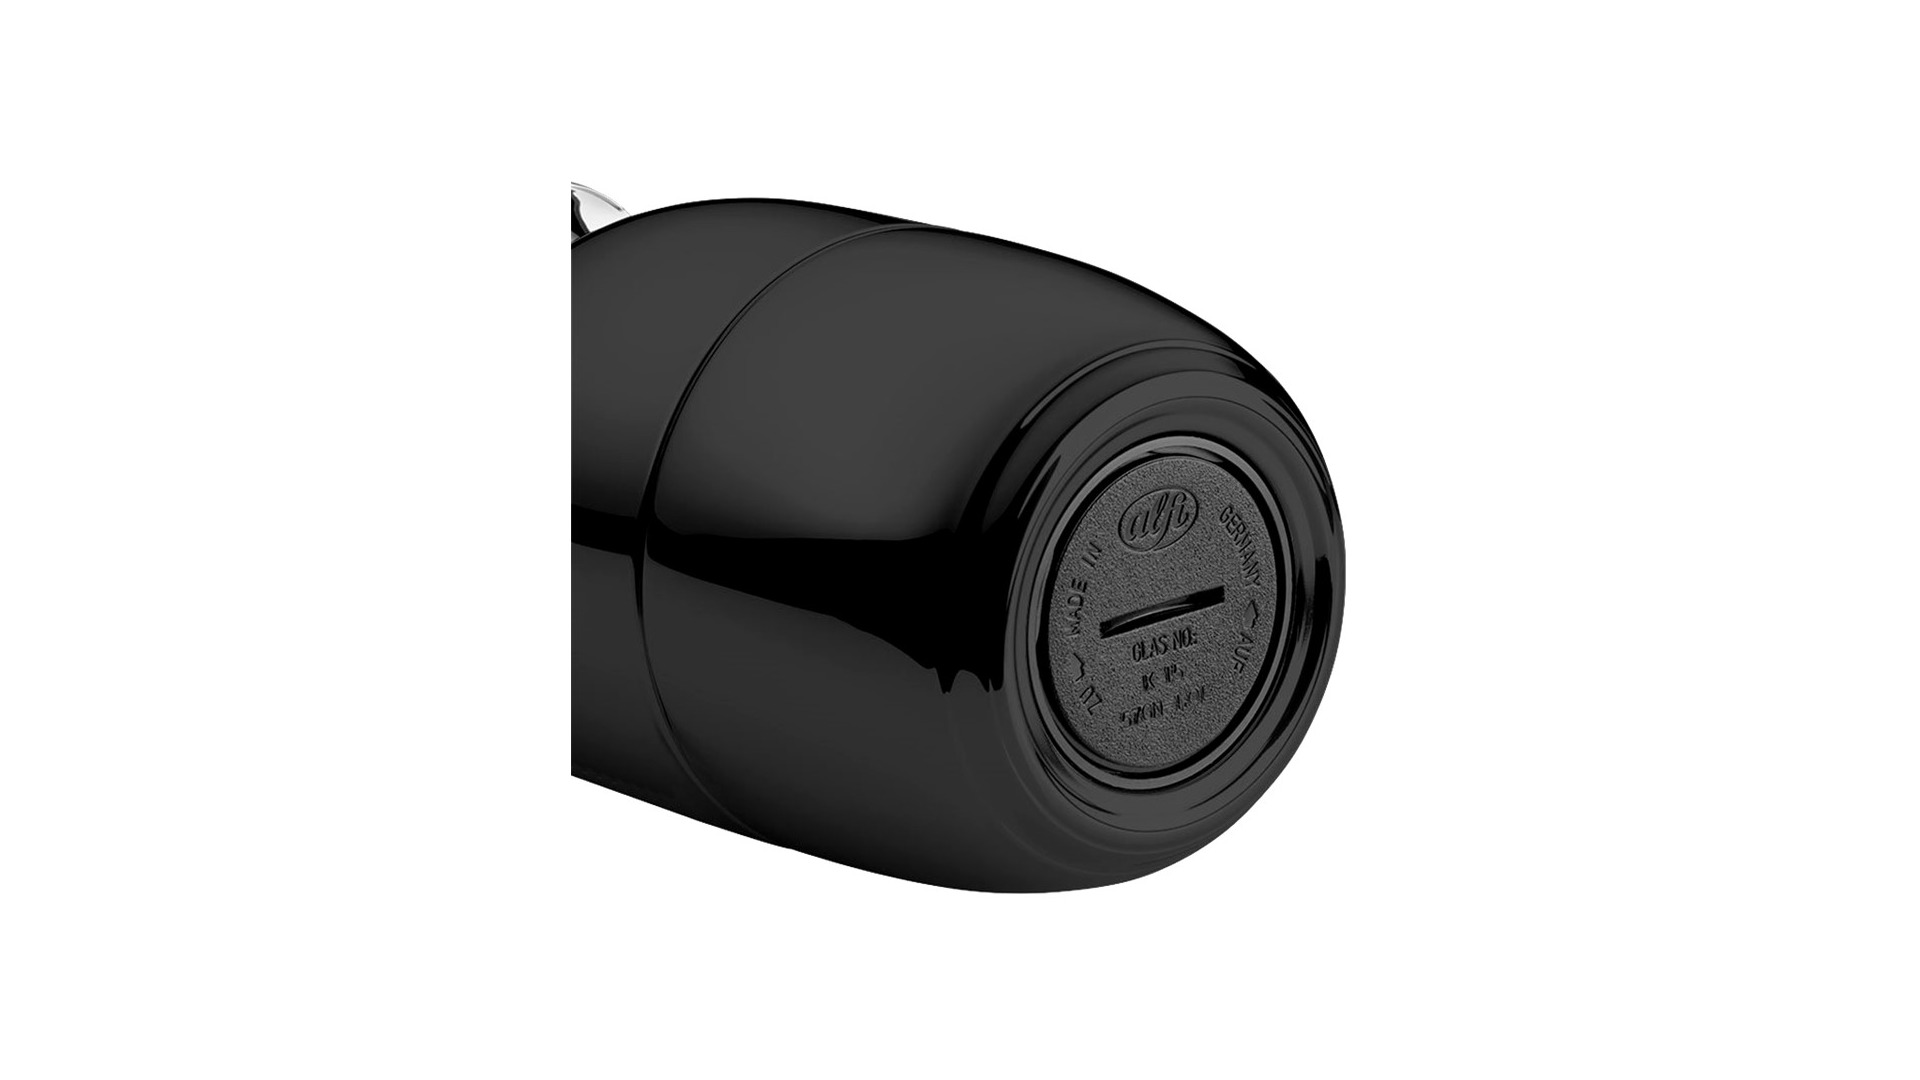 Термокувшин вакуумный со стеклянной колбой Alfi Helena 1 л, латунь лакированная, черный